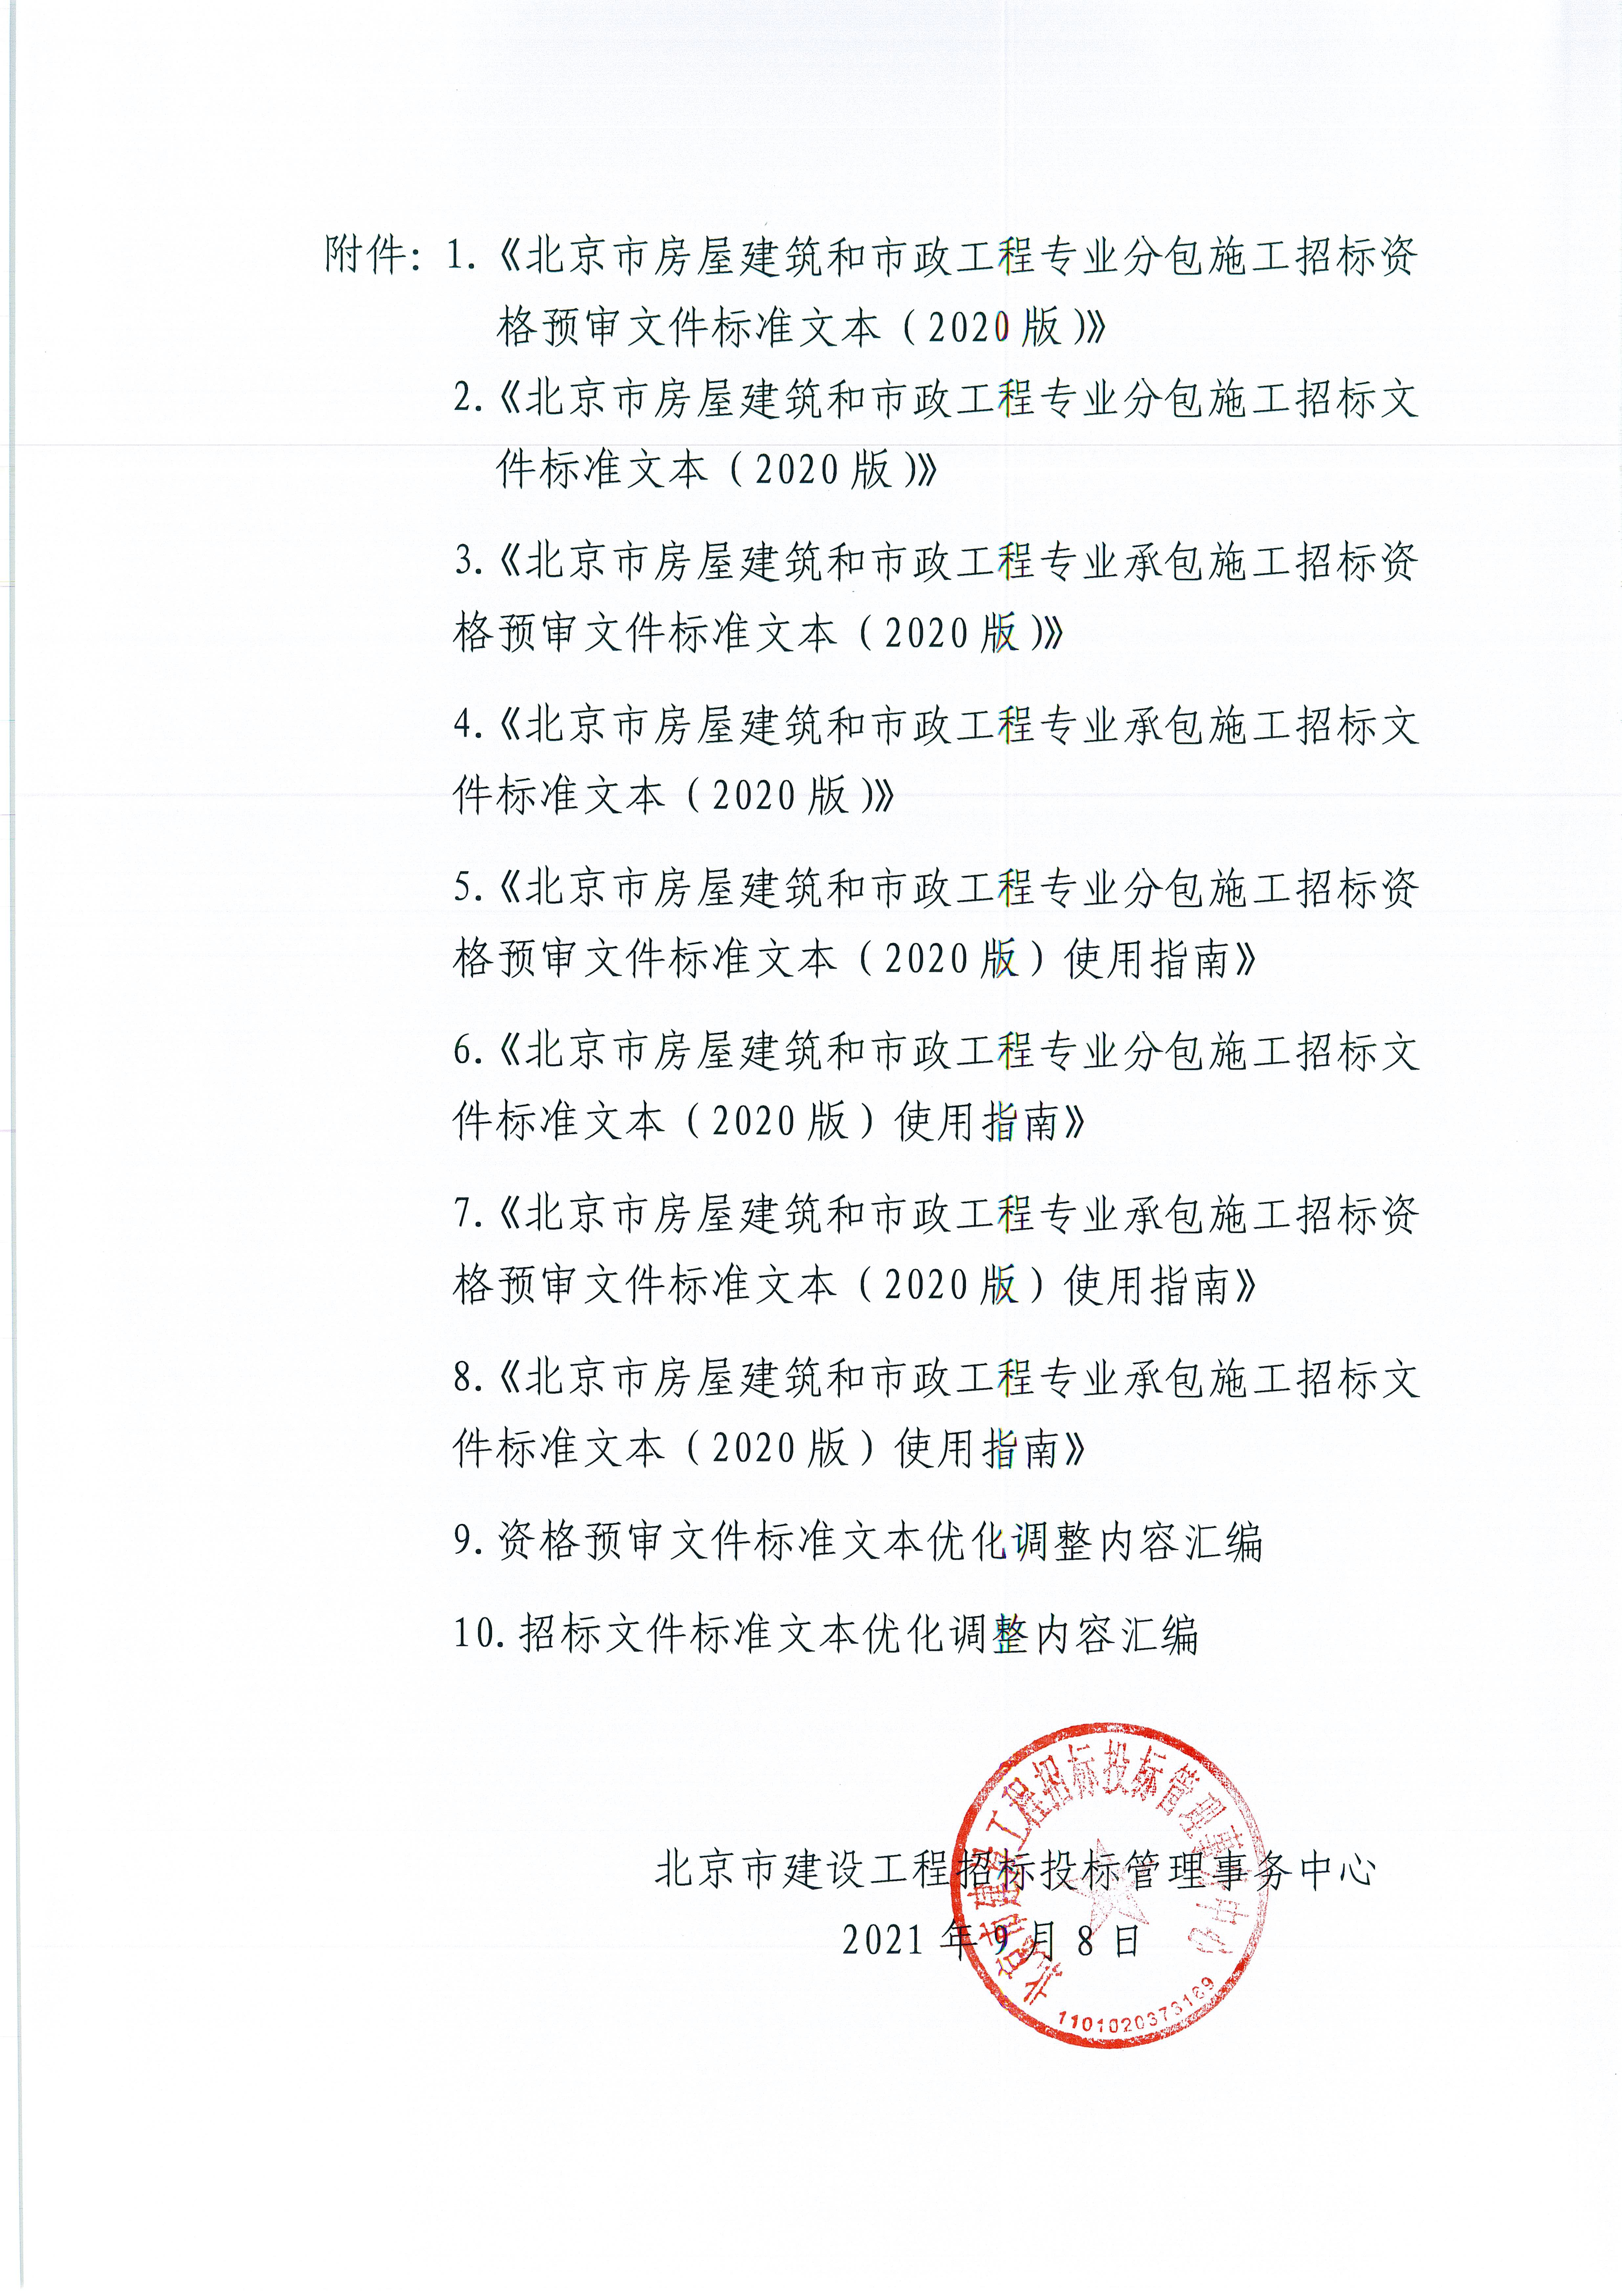 關于優化調整《北京市房屋建筑和市政工程專業承（分）包施工招標標準文本》的通知